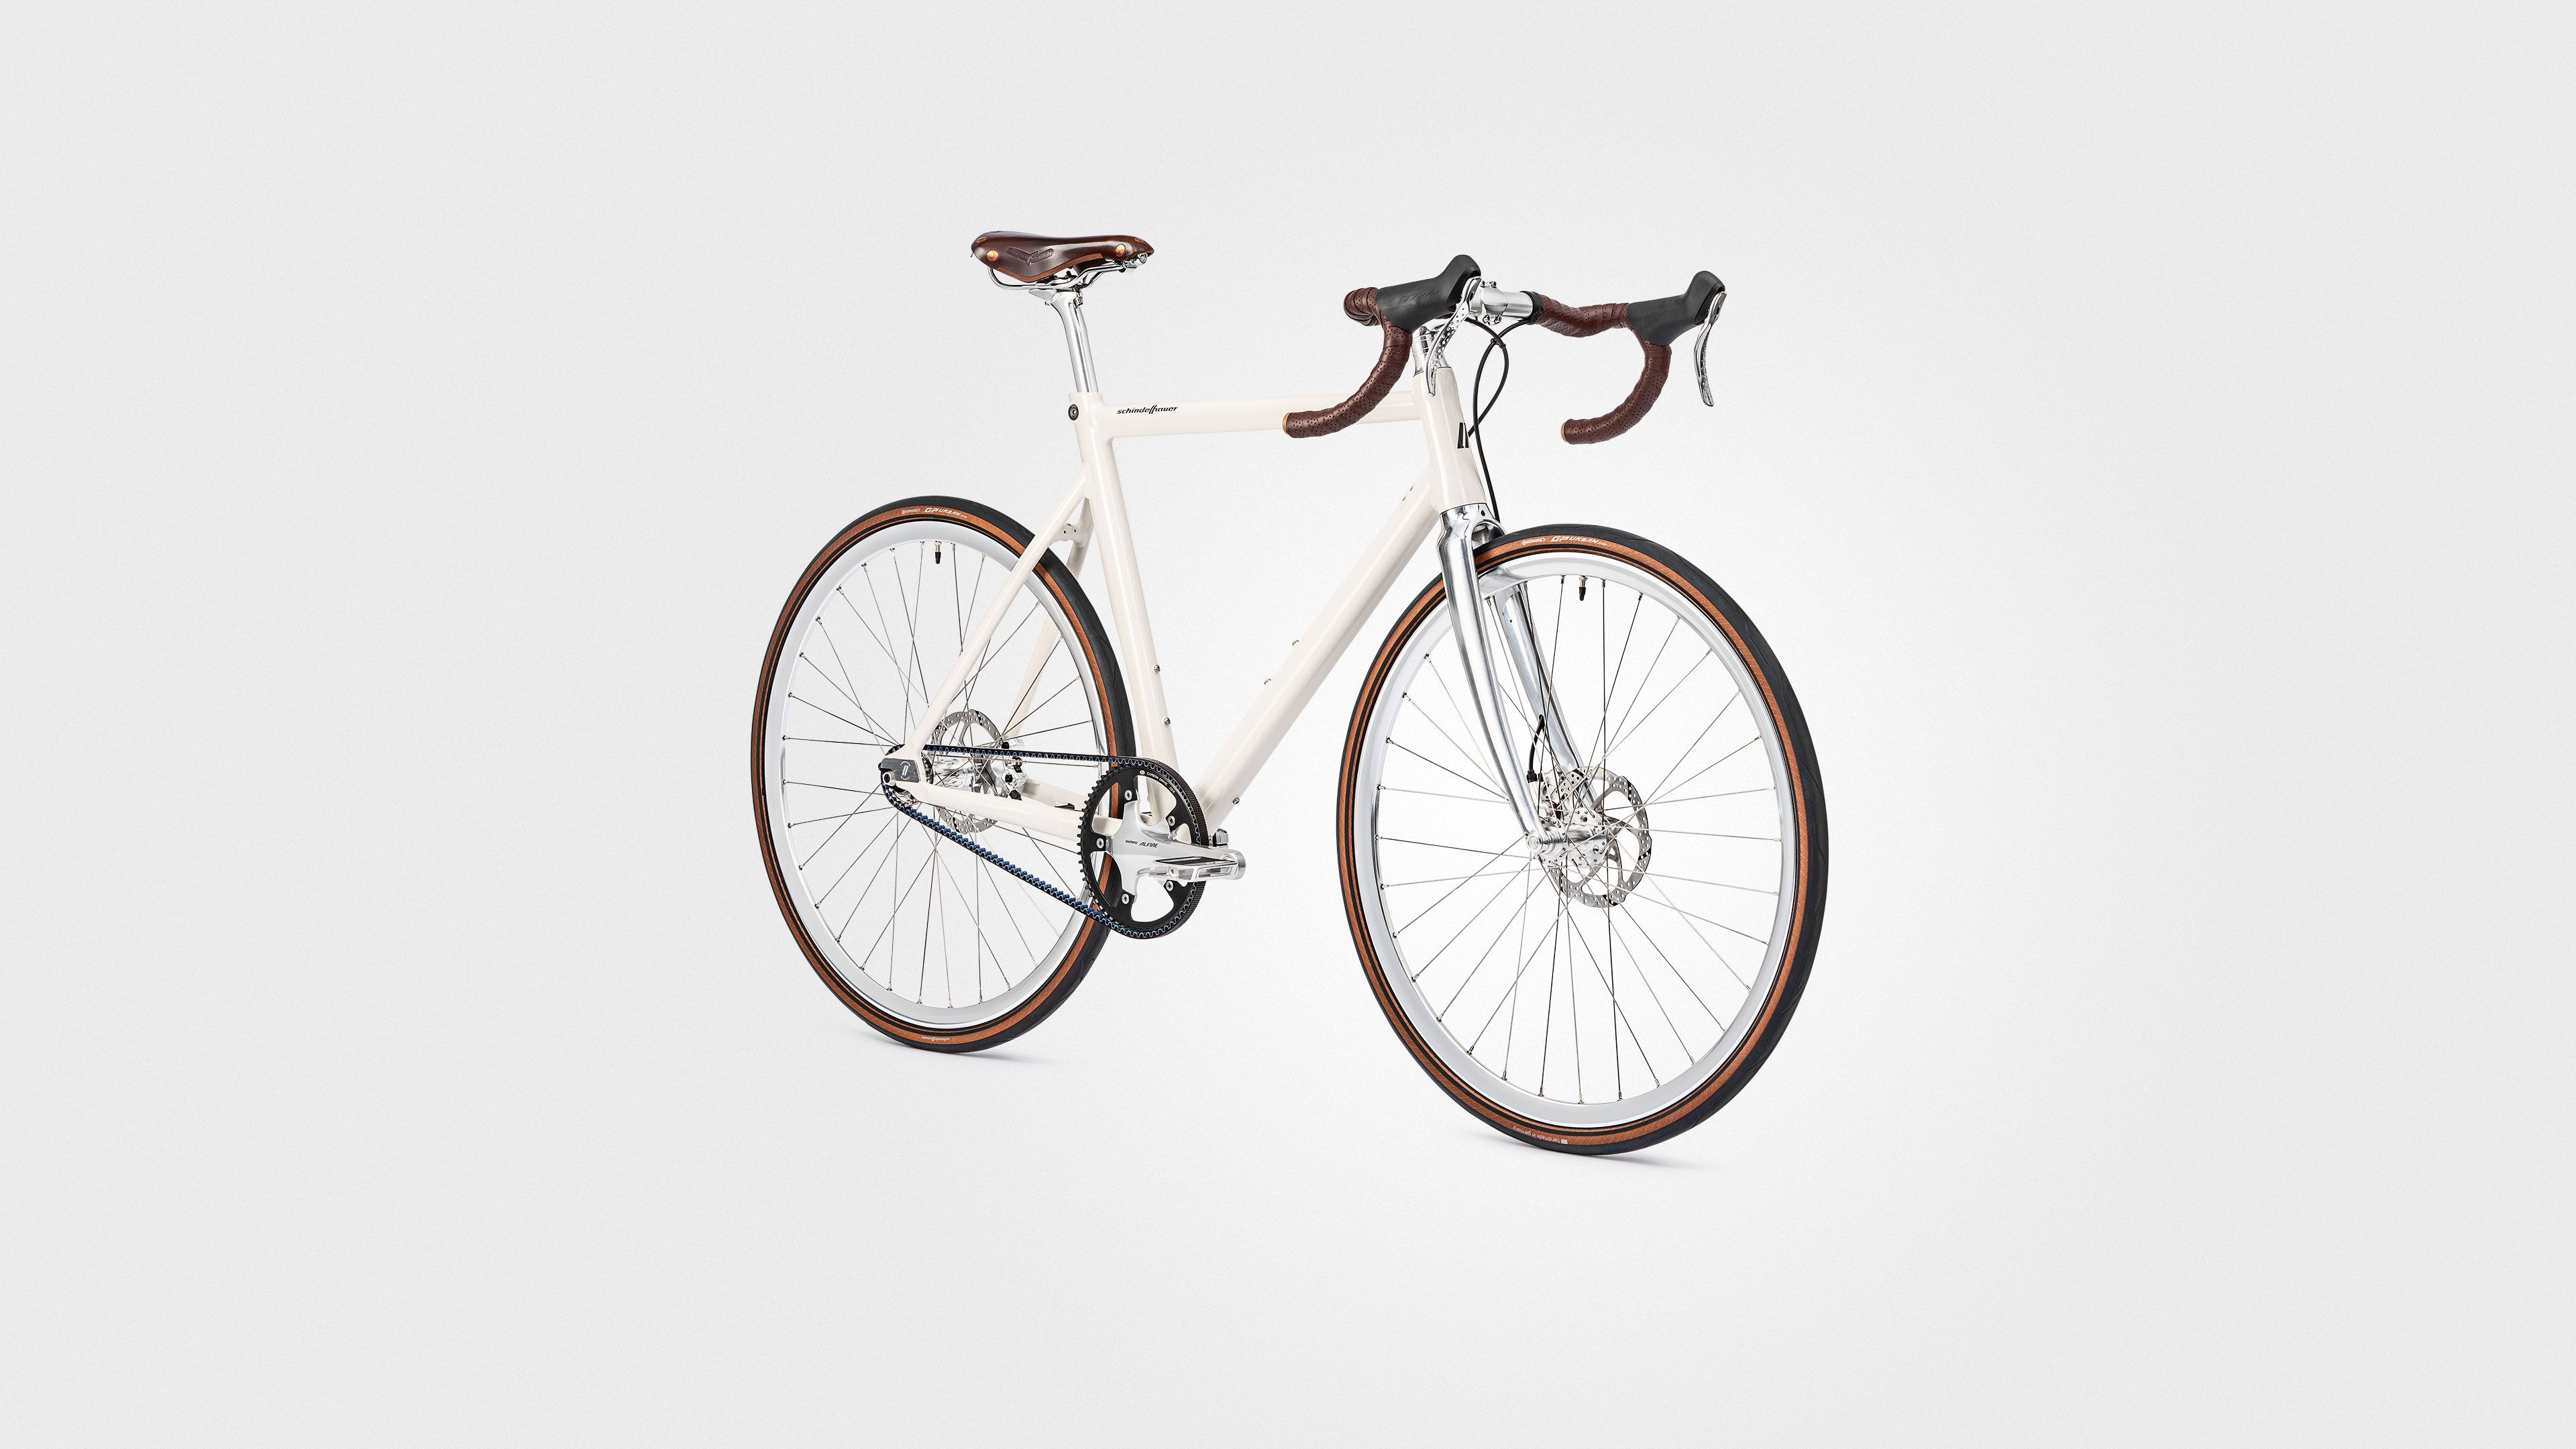 Neues Custom-Modell: Wilhelm Singlespeed - Das perfekte Commuter-Bike, das auf Wunsch individuell angepasst werden kann. Ab sofort beim Schindelhauer-Händler oder auf unserer Website bestellbar.